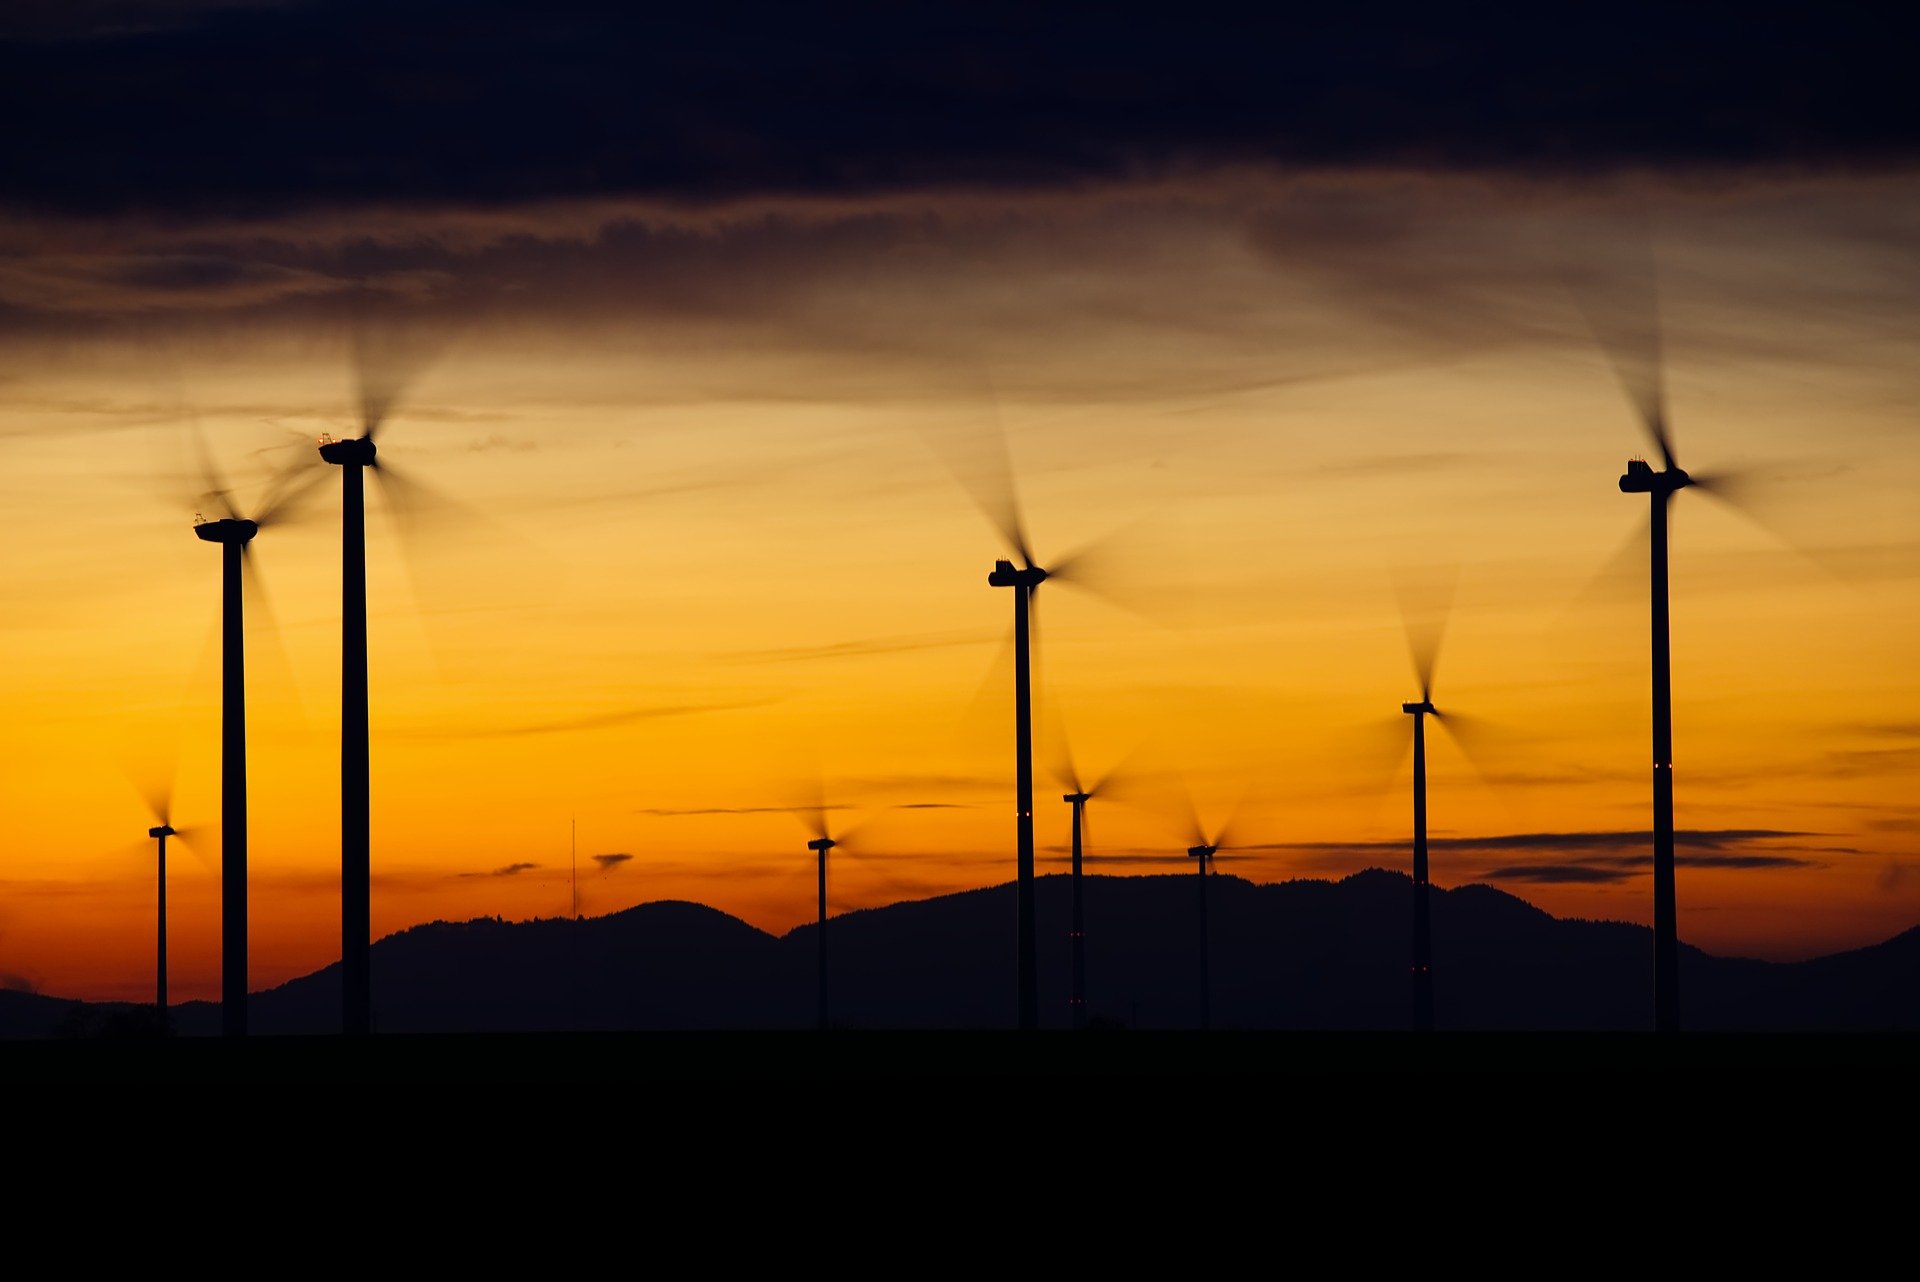 Erneuerbare Energien: Treibhausneutralität als gemeinsames europäisches Ziel